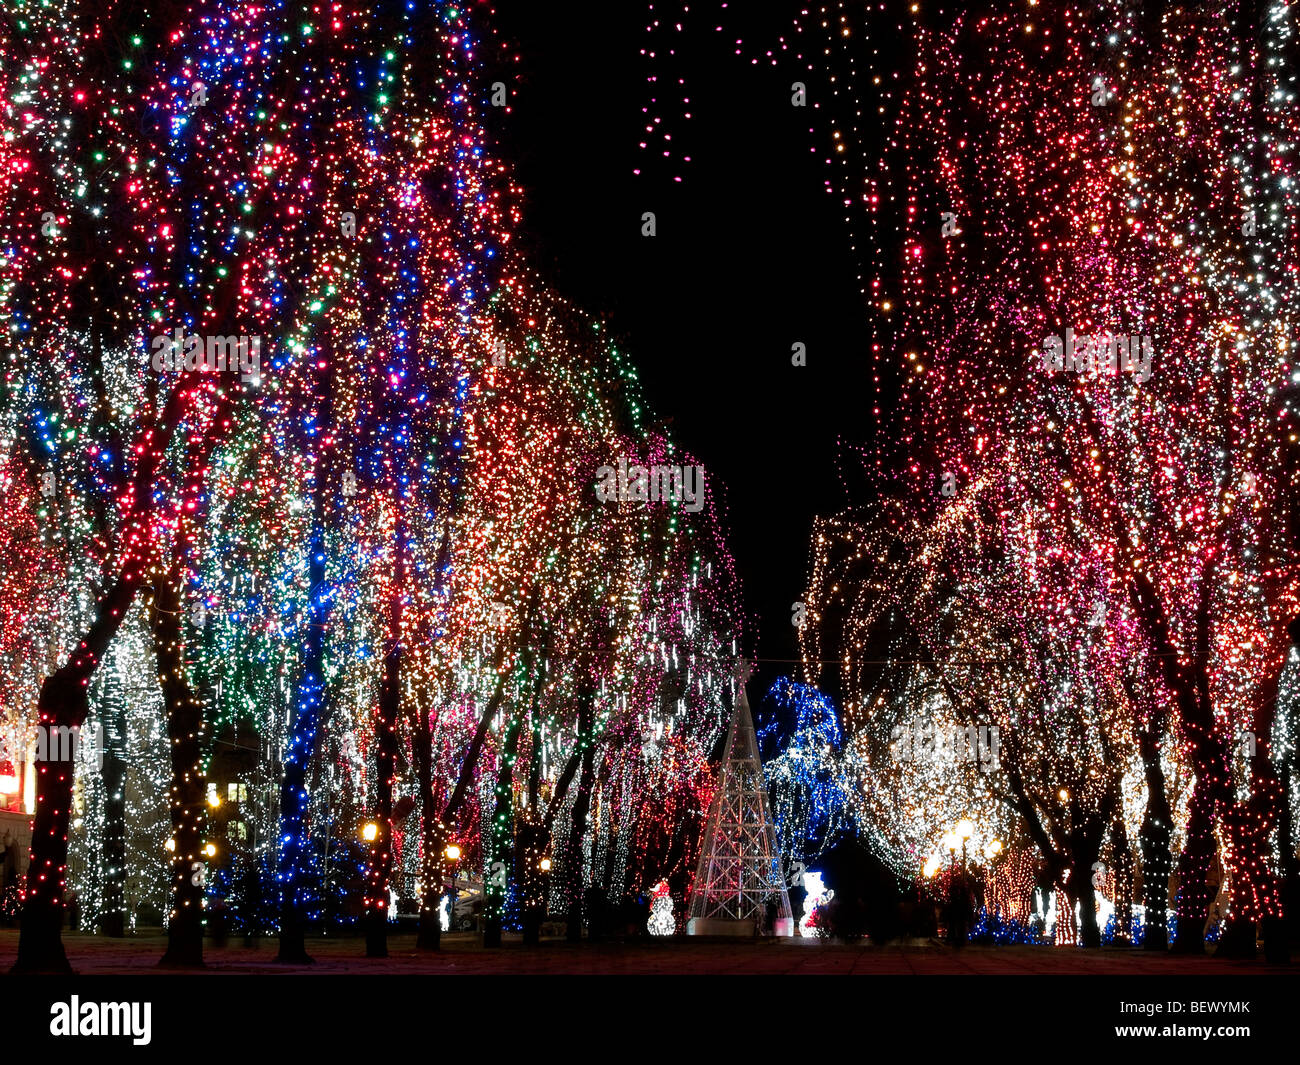 Weihnachten Dekorationen im freien - Lichter auf Bäumen Nacht Stockfoto